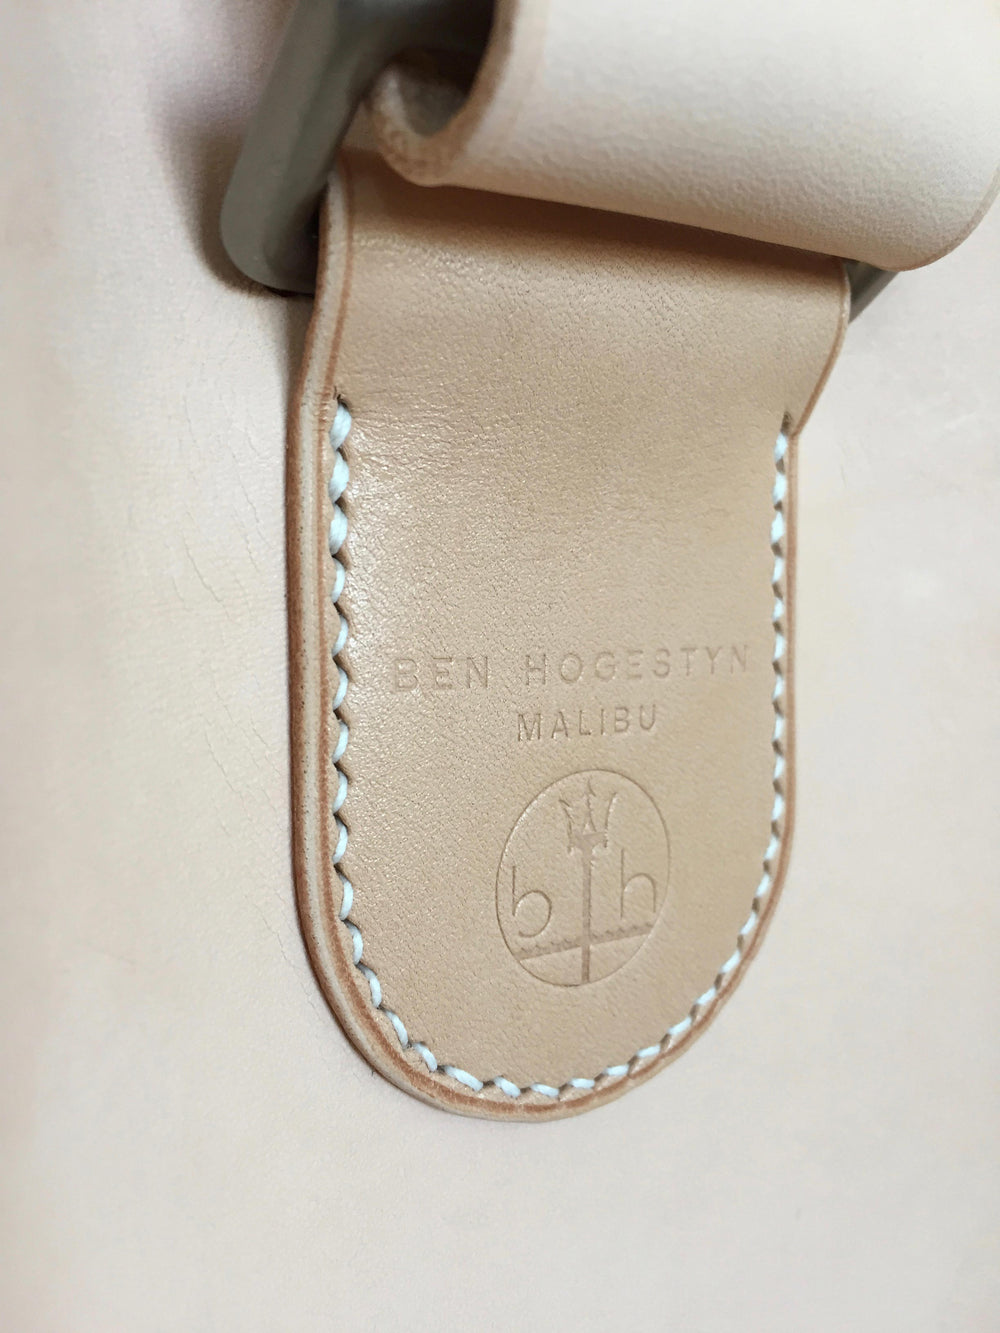 Ben Hogestyn Malibu Messenger Bag Built With Louis Vuitton Veg Tan Hand Sewn Detail